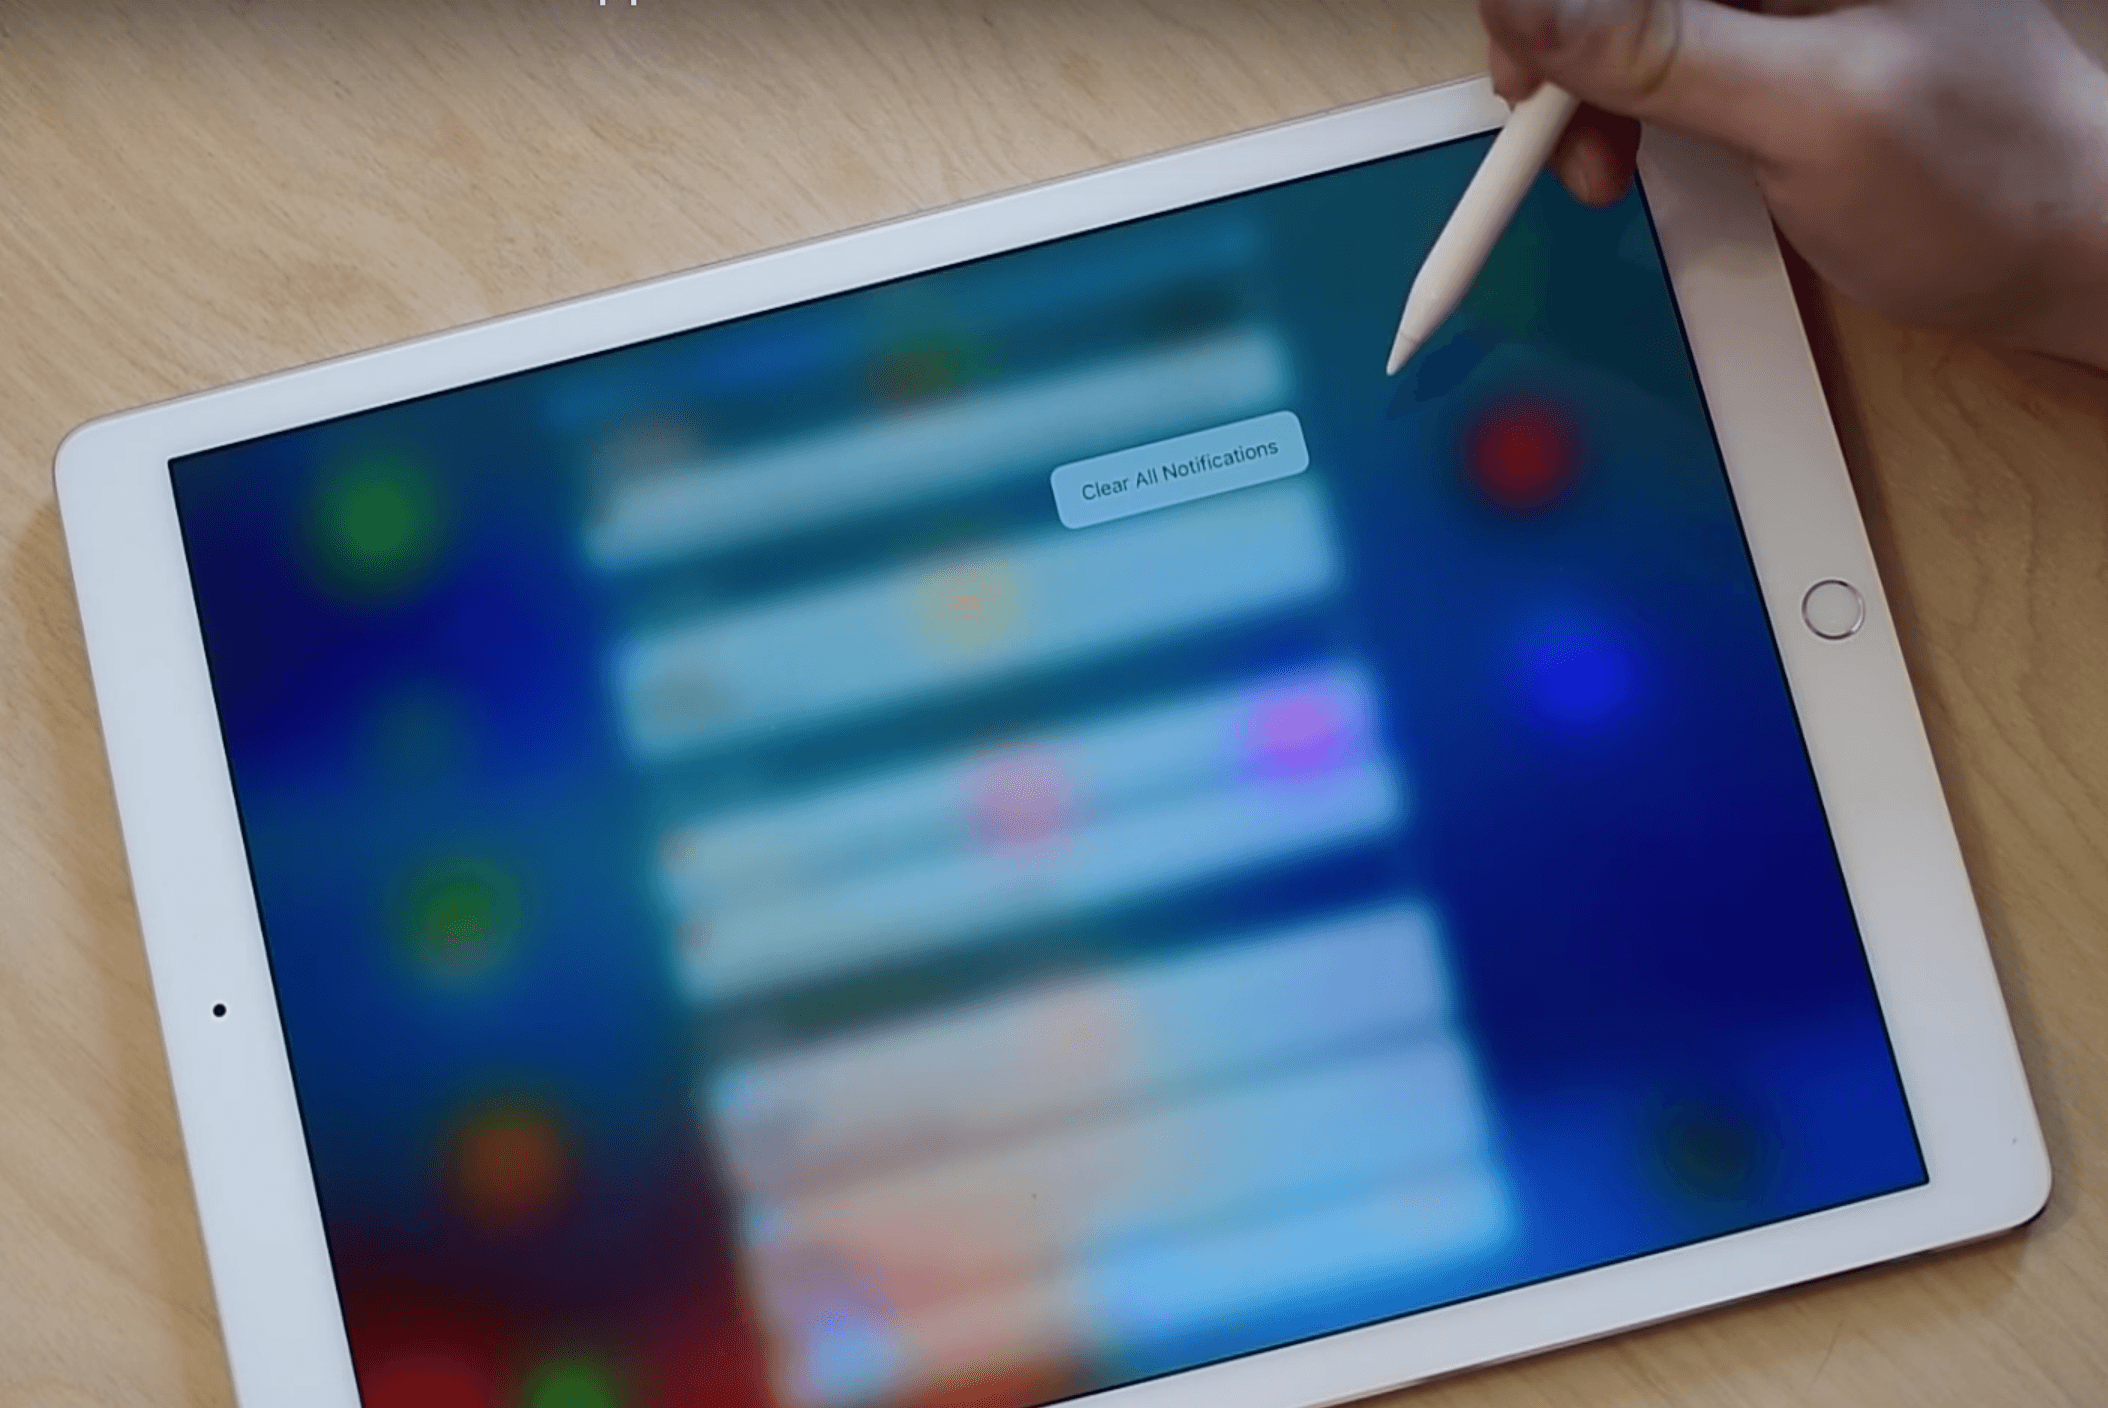 3D Touch on iPad Pro